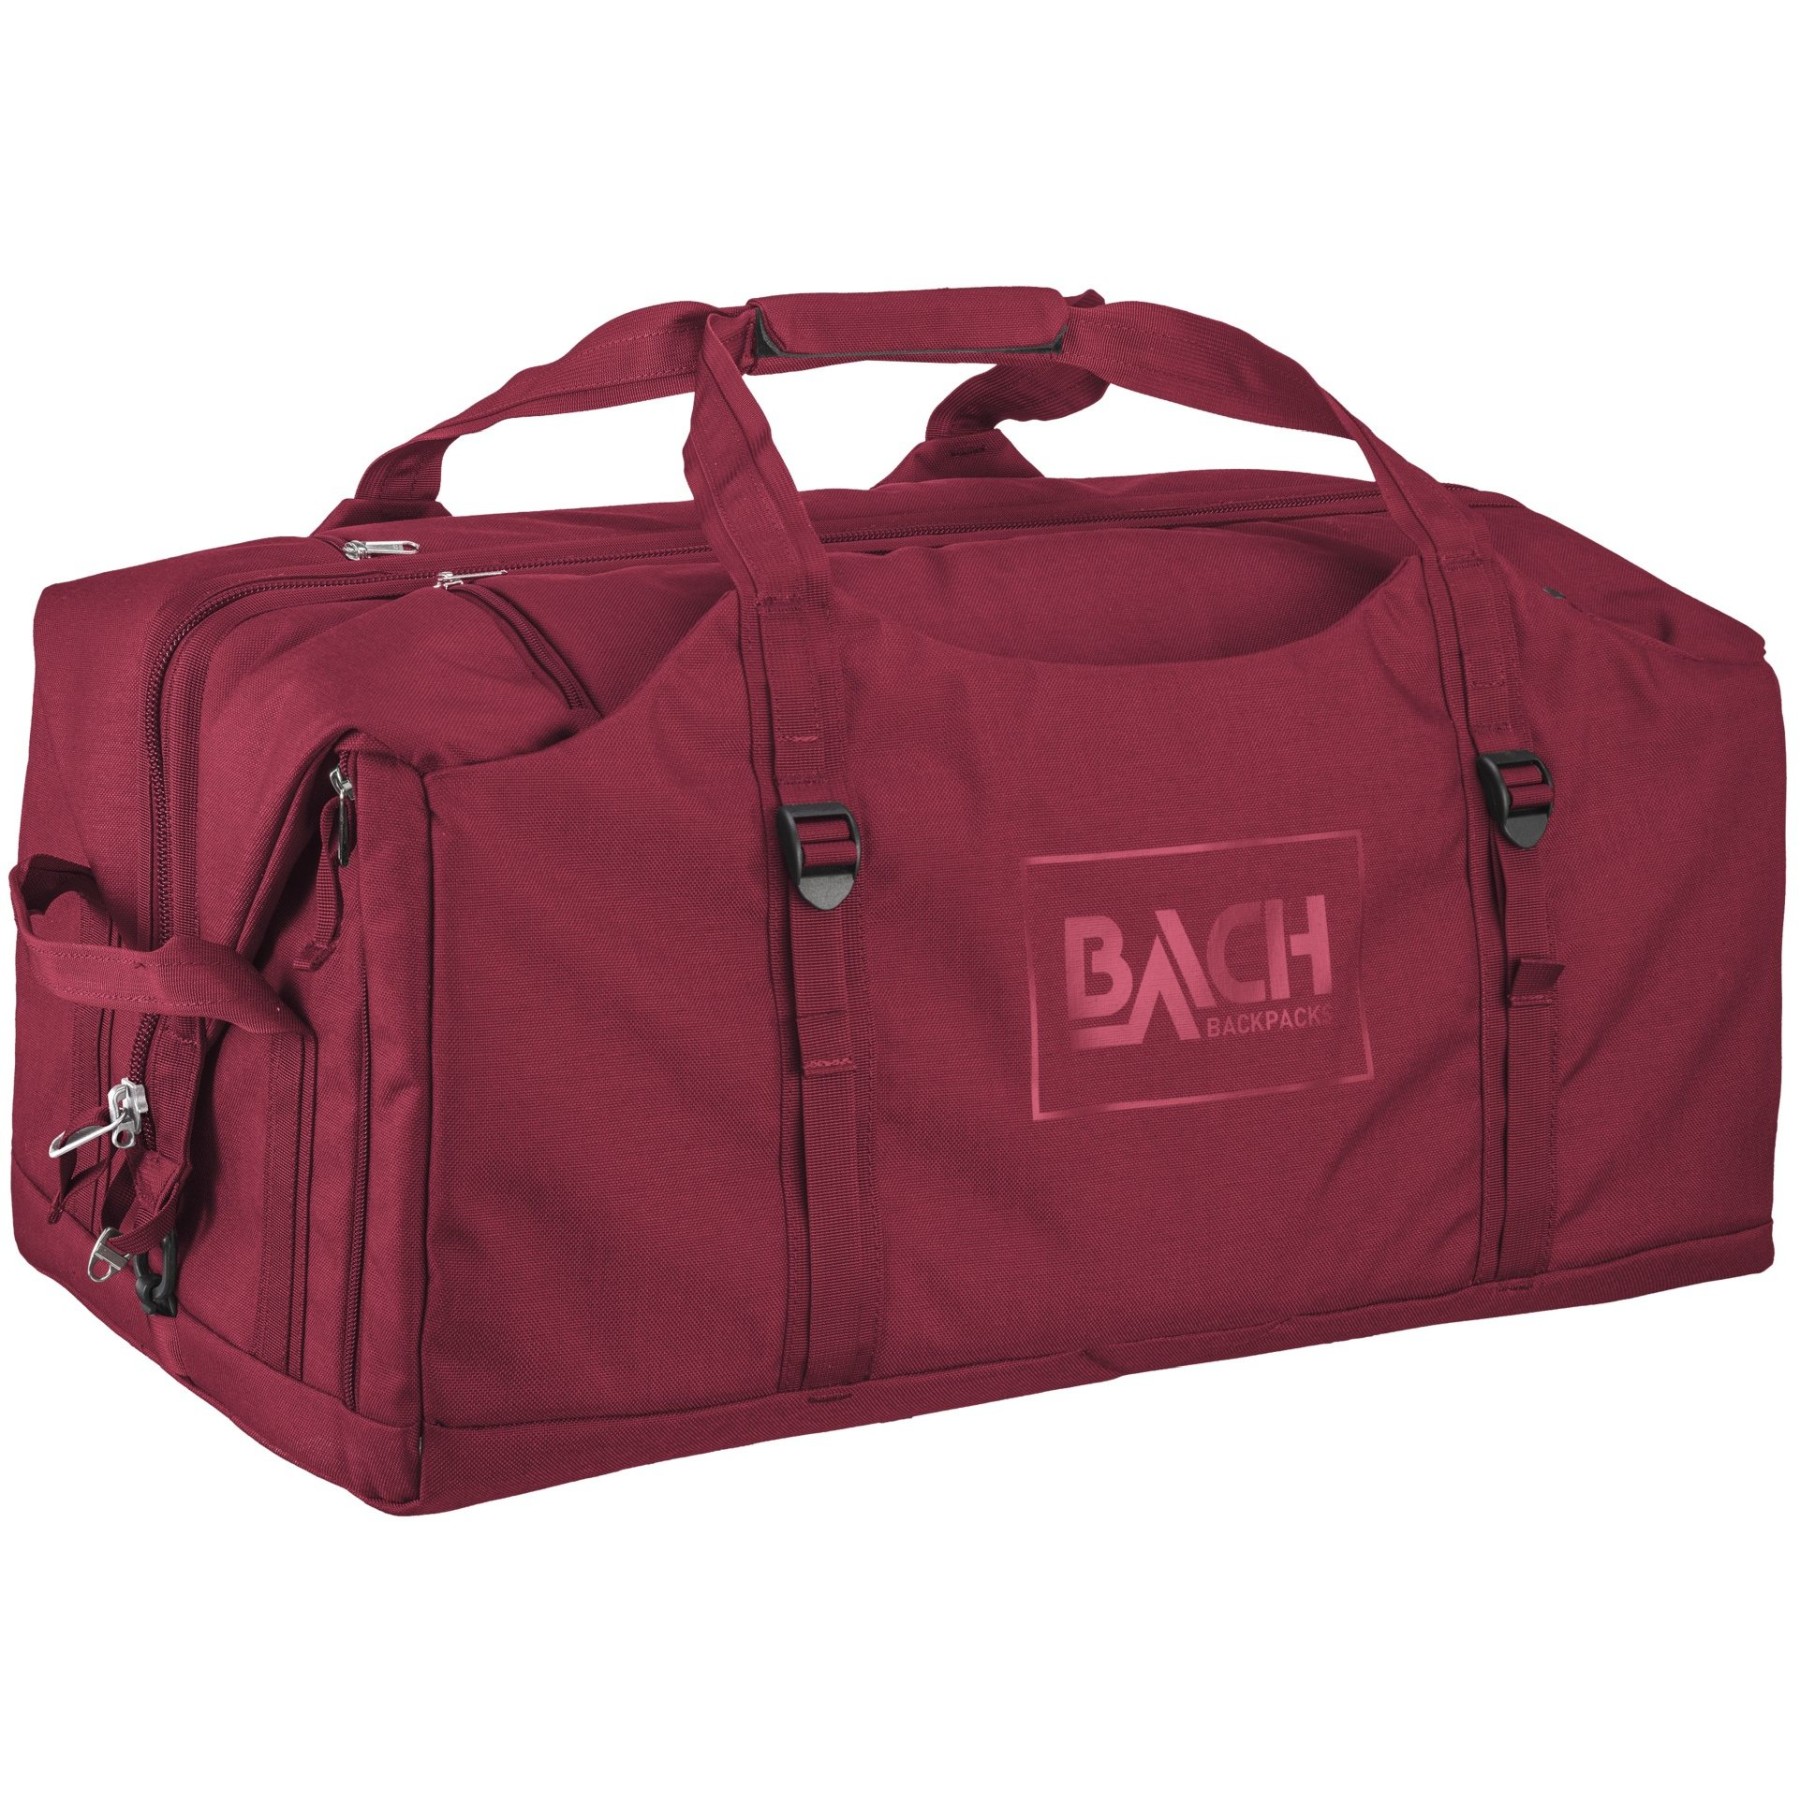 Produktbild von Bach Dr. Duffel 70 Reisetasche - red